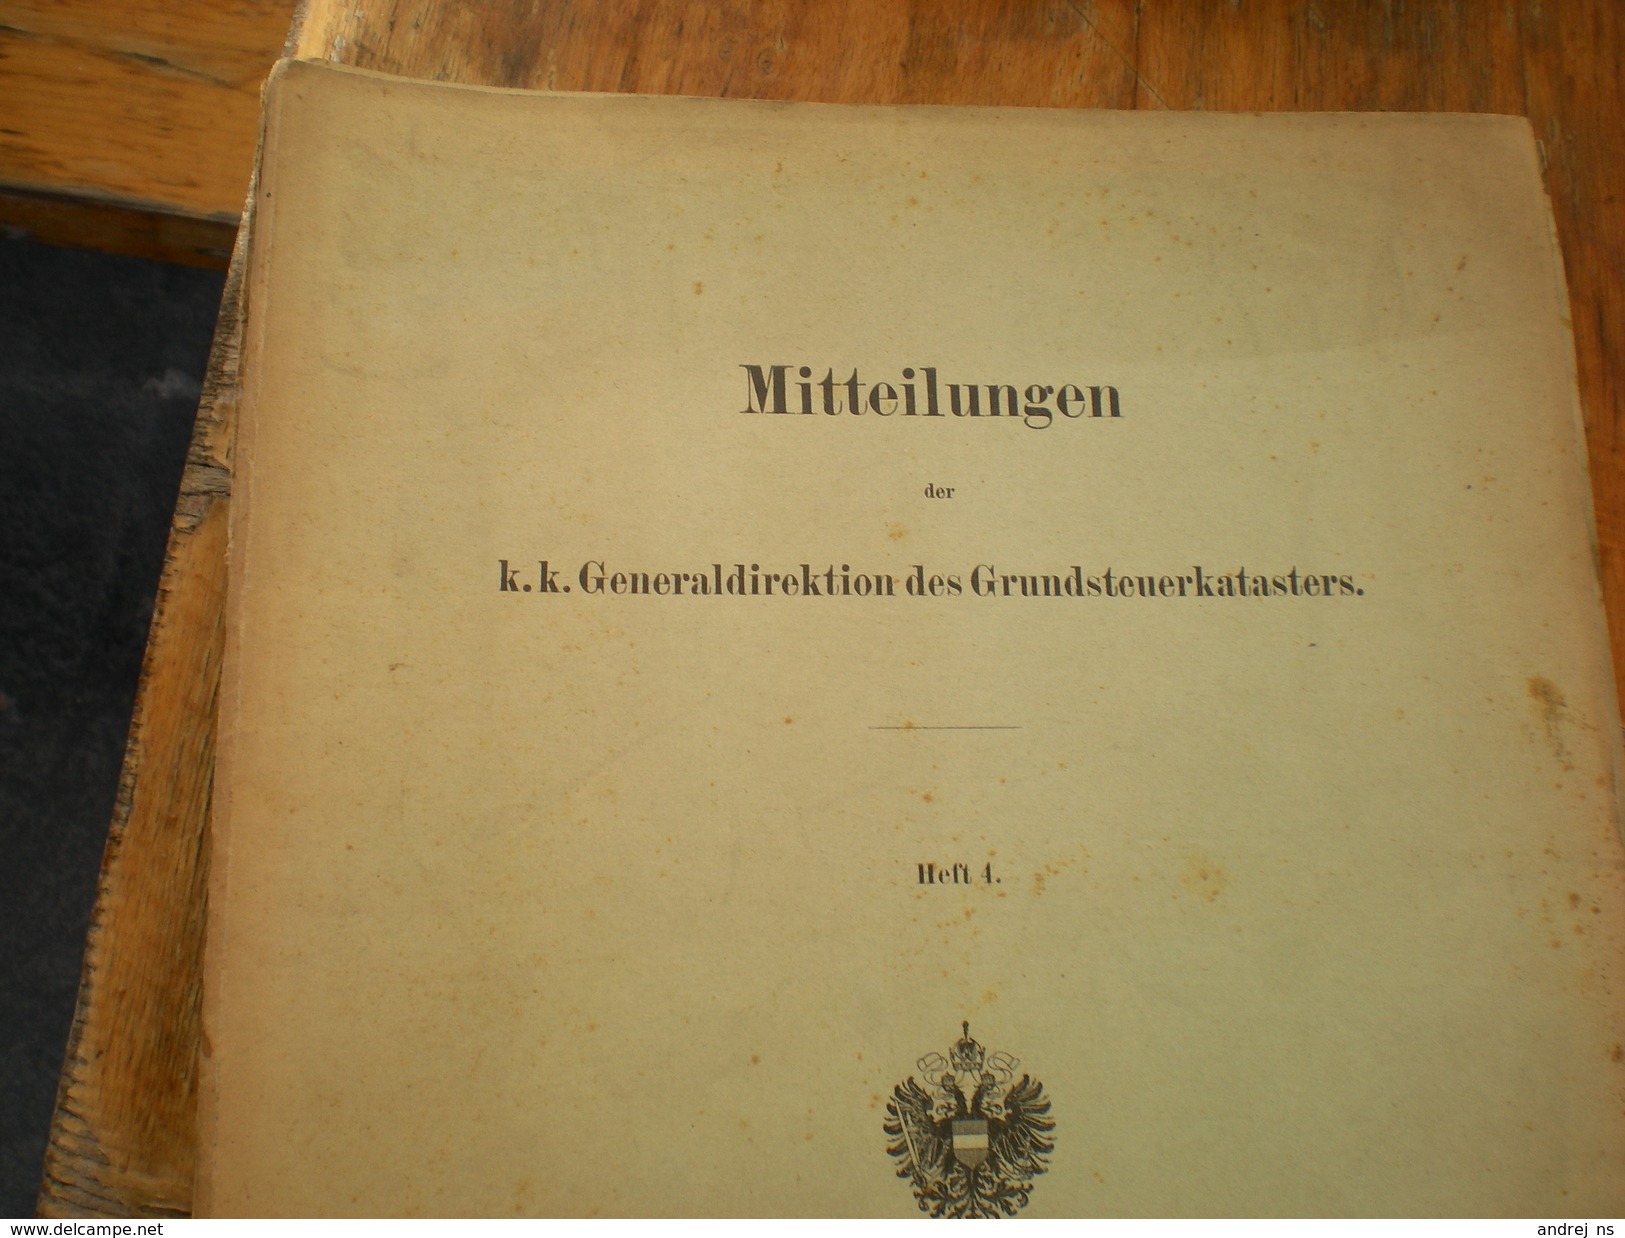 Mitteilungen der K.K. Generaldirektion des Grunsteuerkatasters Wien 1914 Heft 1 ,2 4,5